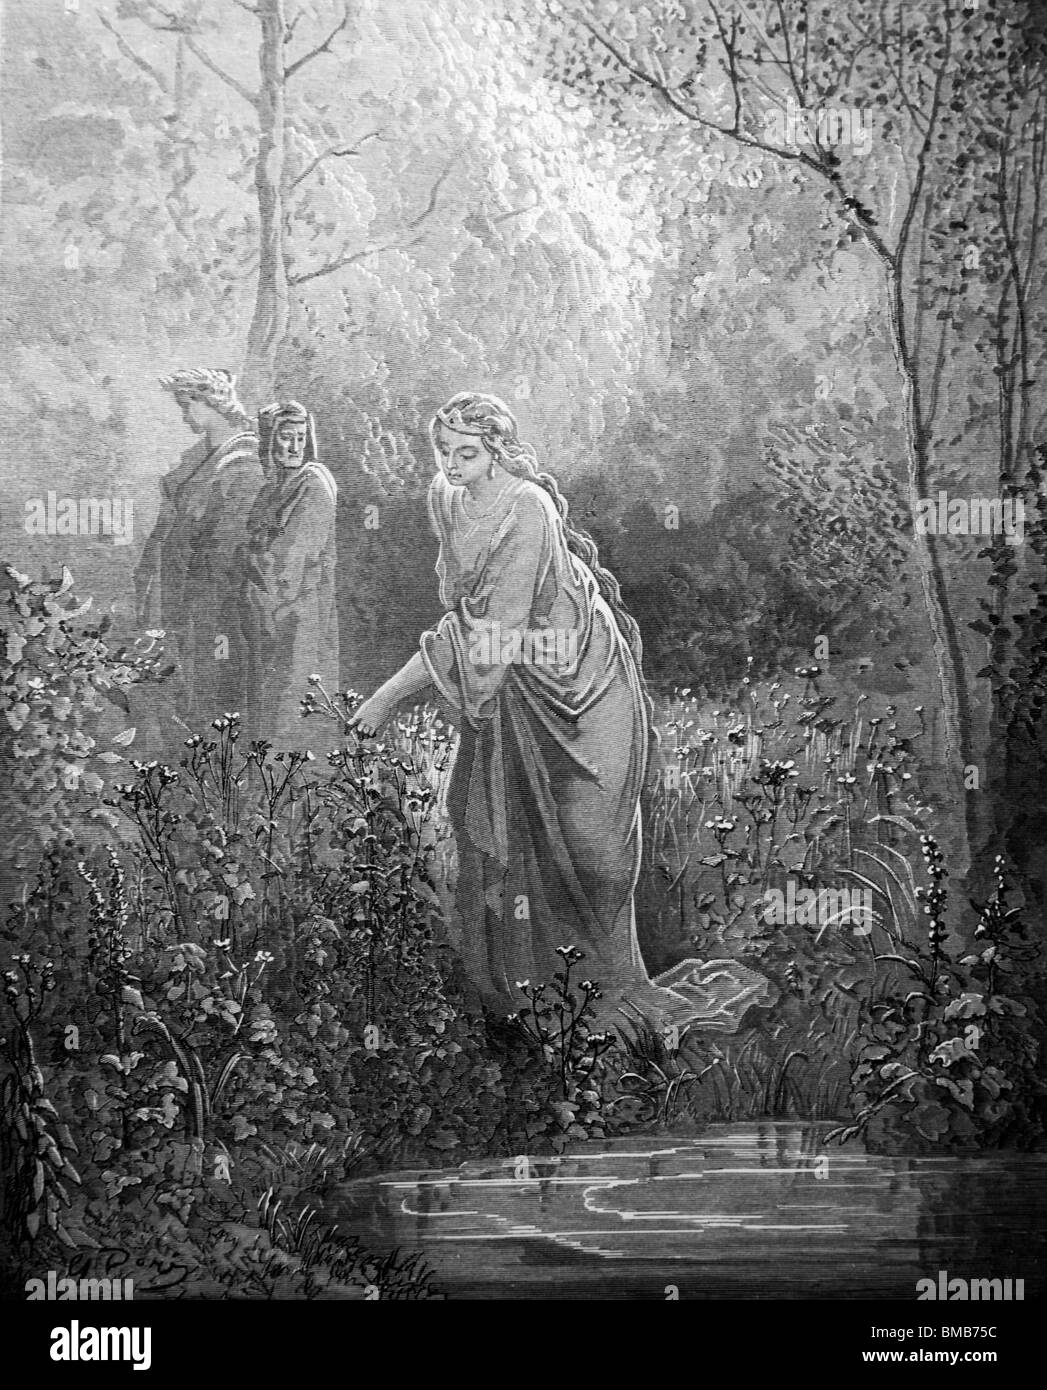 Incisione di Gustave Doré da Dante Alighieri nella Divina Commedia, Dante e Virgilio incontrano Matelda nel giardino del paradiso terrestre Foto Stock